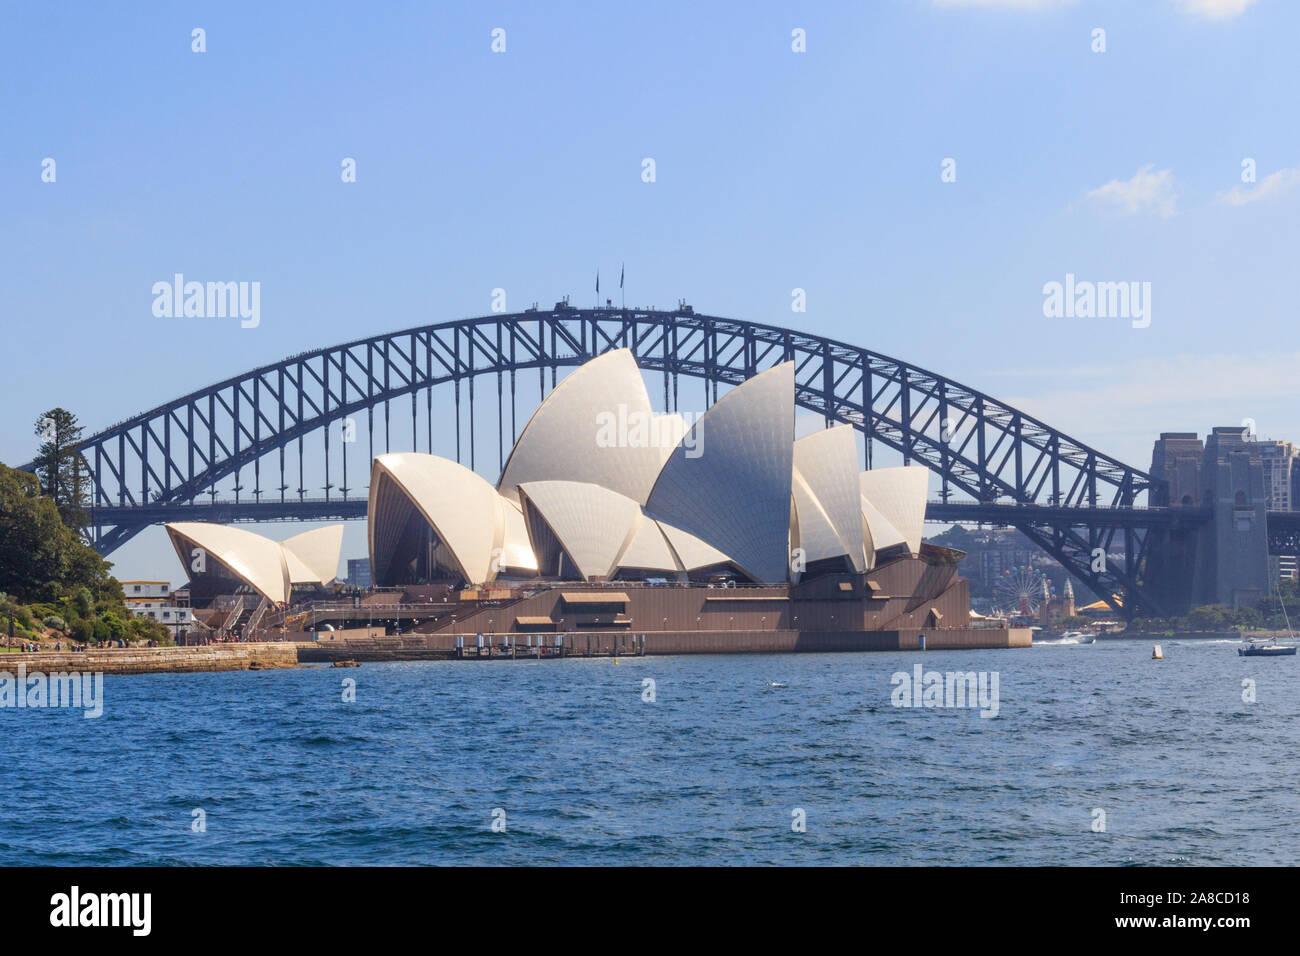 Sydney, Australie - 24 mars 2013 : vue sur l'opéra dans le port de Sydney. Le Sydney Harbour Bridge est à l'arrière-plan. Banque D'Images